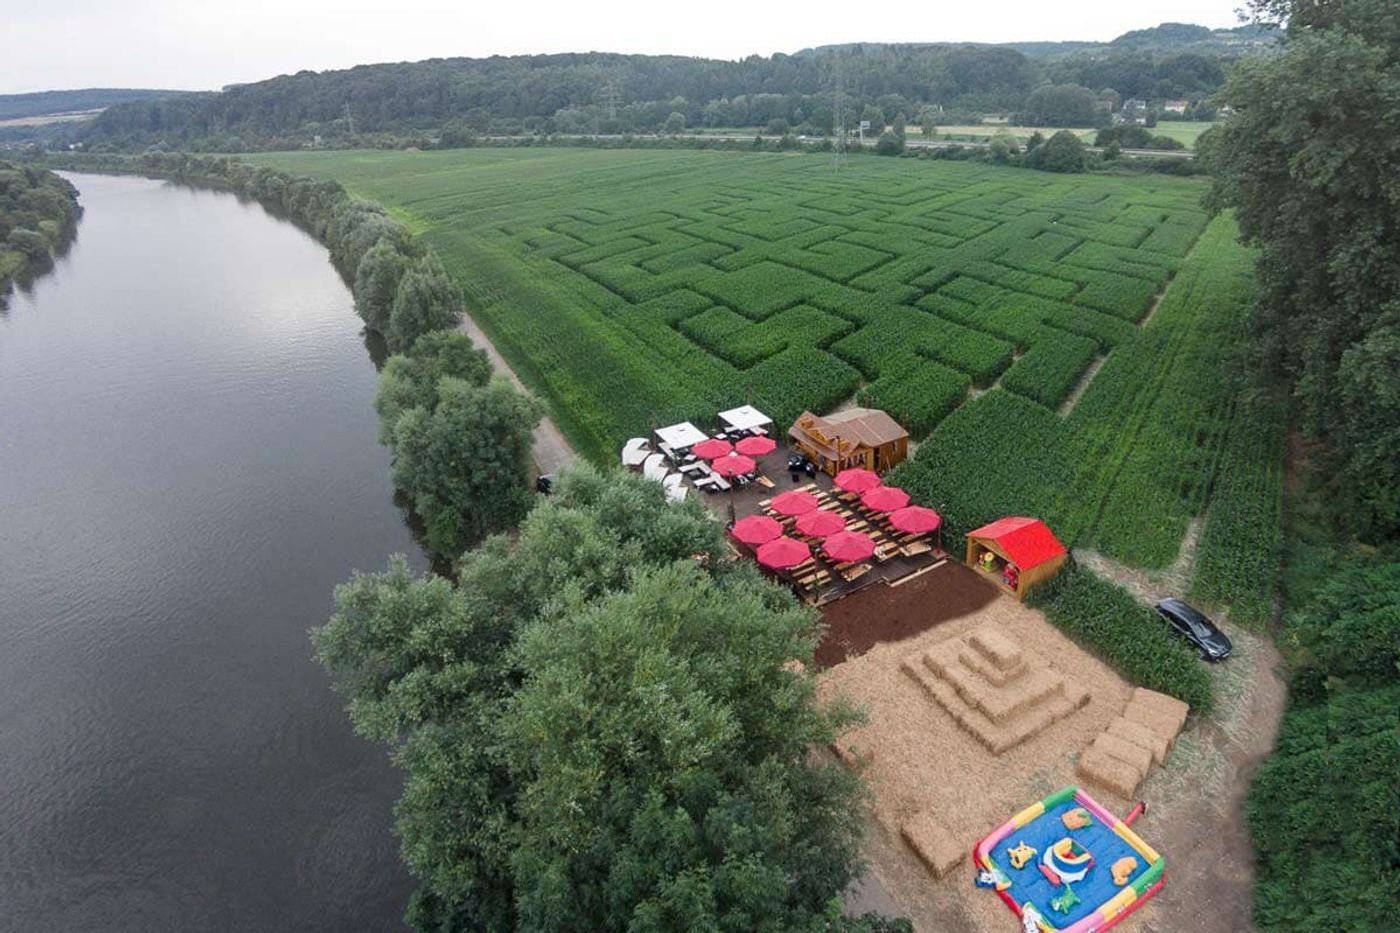 Spaß und Abenteuer im riesigen Maislabyrinth